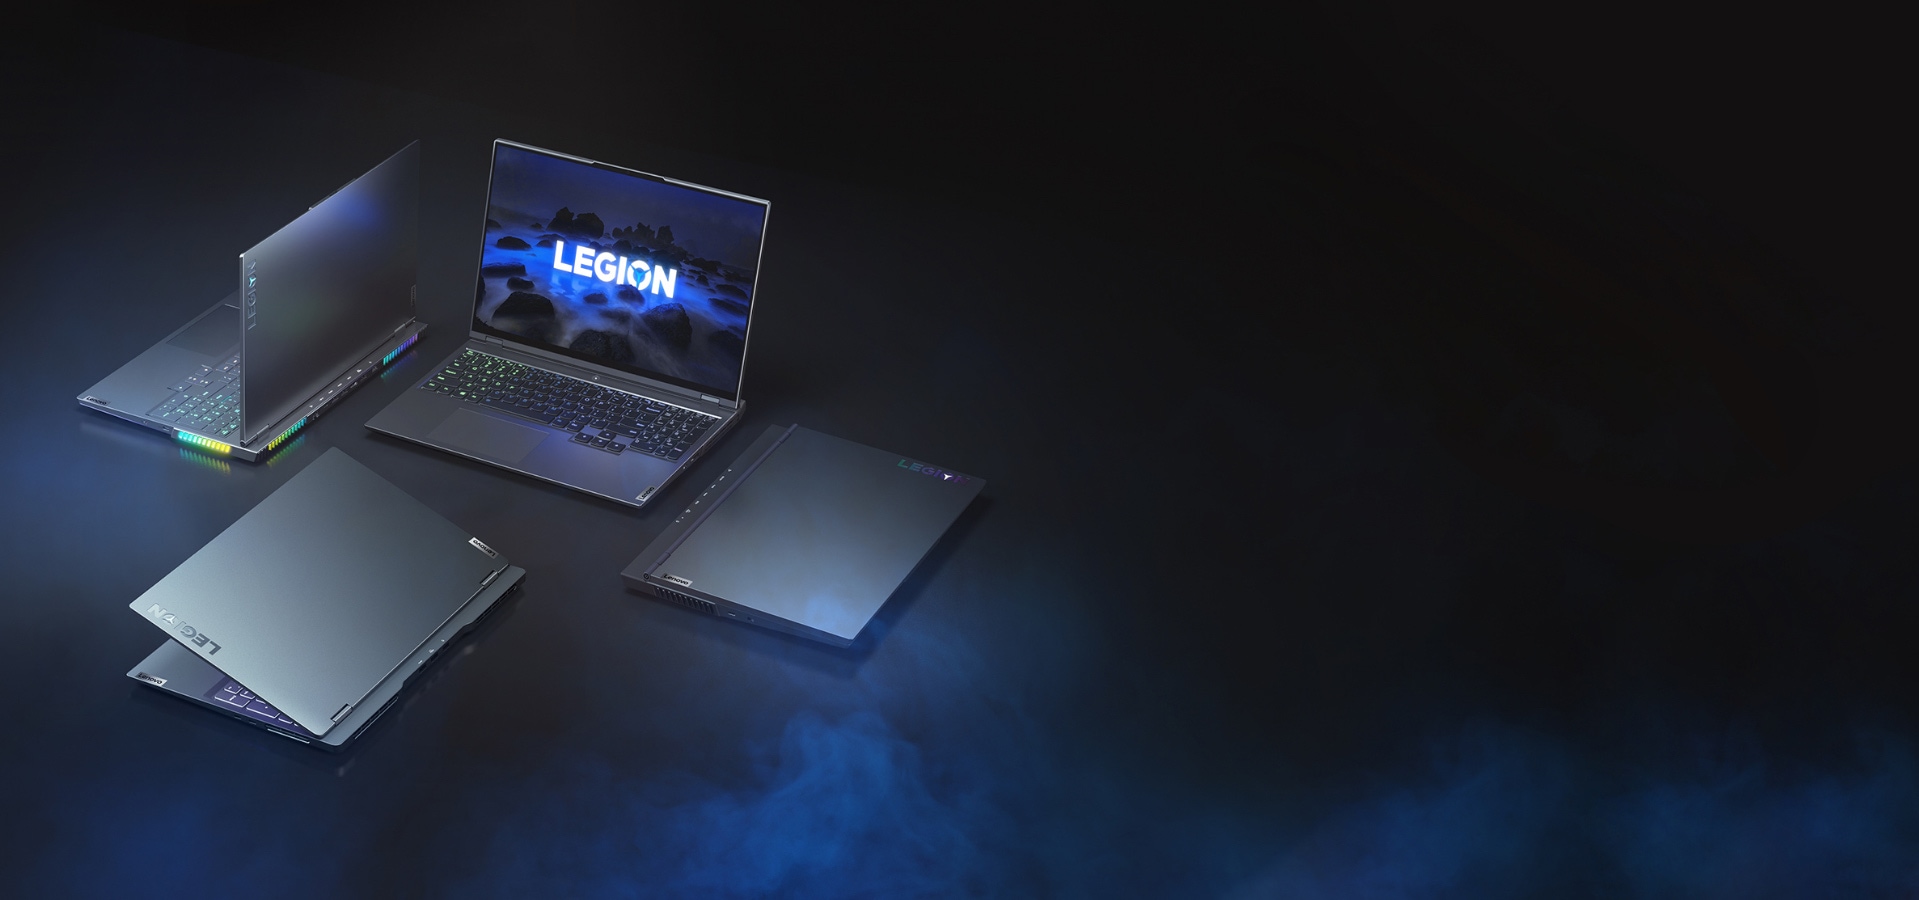 Четыре игровых ноутбука Lenovo Legion, направленные в разные стороны, крышки ноутбуков открыты под разными углами: Lenovo Legion 5, Lenovo Legion 5 Pro, Lenovo Legion 7 и Lenovo Legion Slim 7.